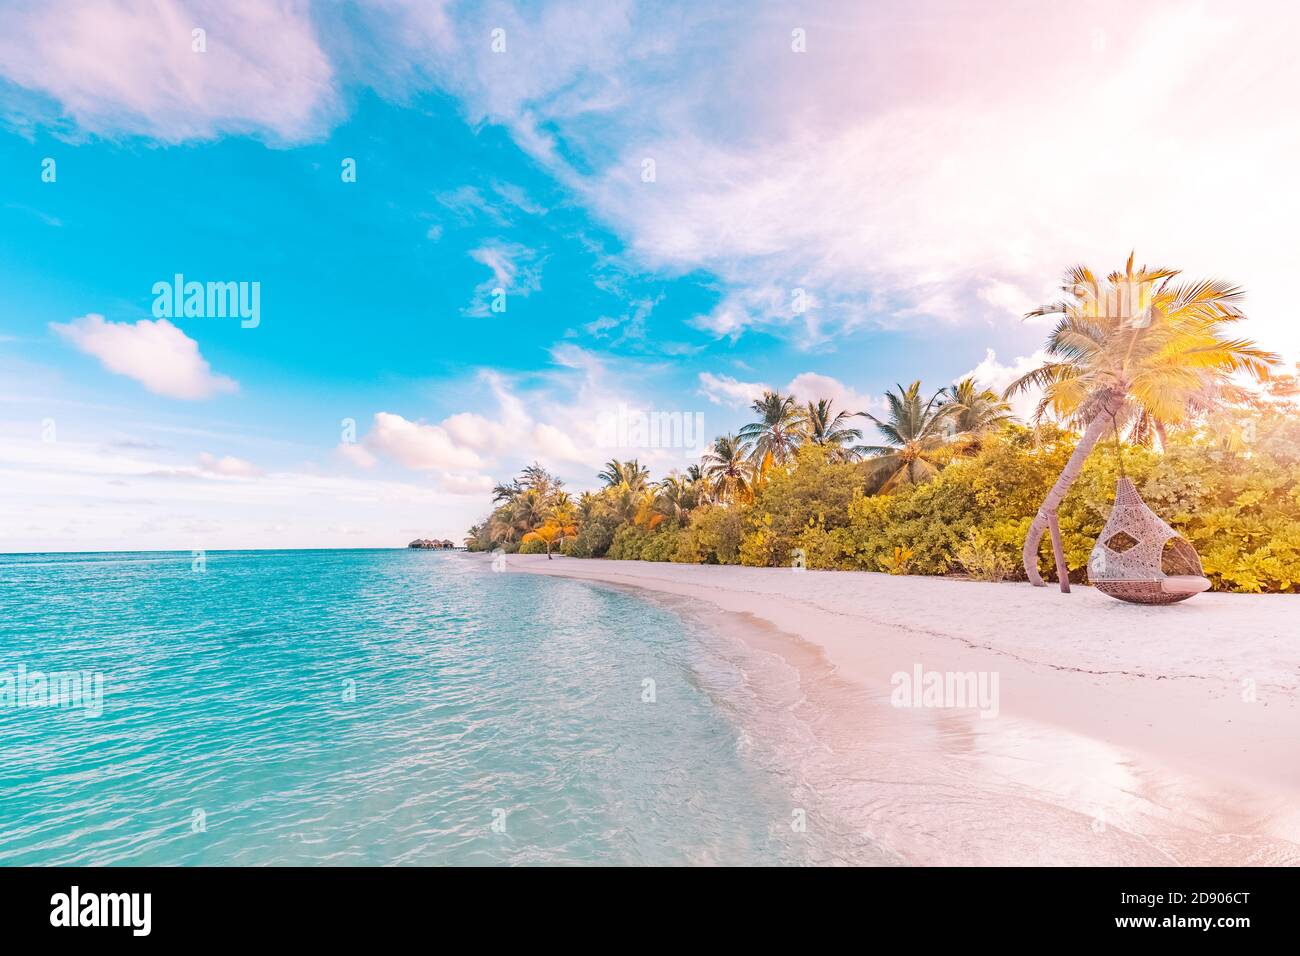 Wunderschönes Sonnenaufgangsparadies Malediven tropischer Strand auf der Insel. Sommer- und Reiseurlaubskonzept. Traumlandschaft, Sonnenuntergangslicht, ruhig, entspannend Stockfoto